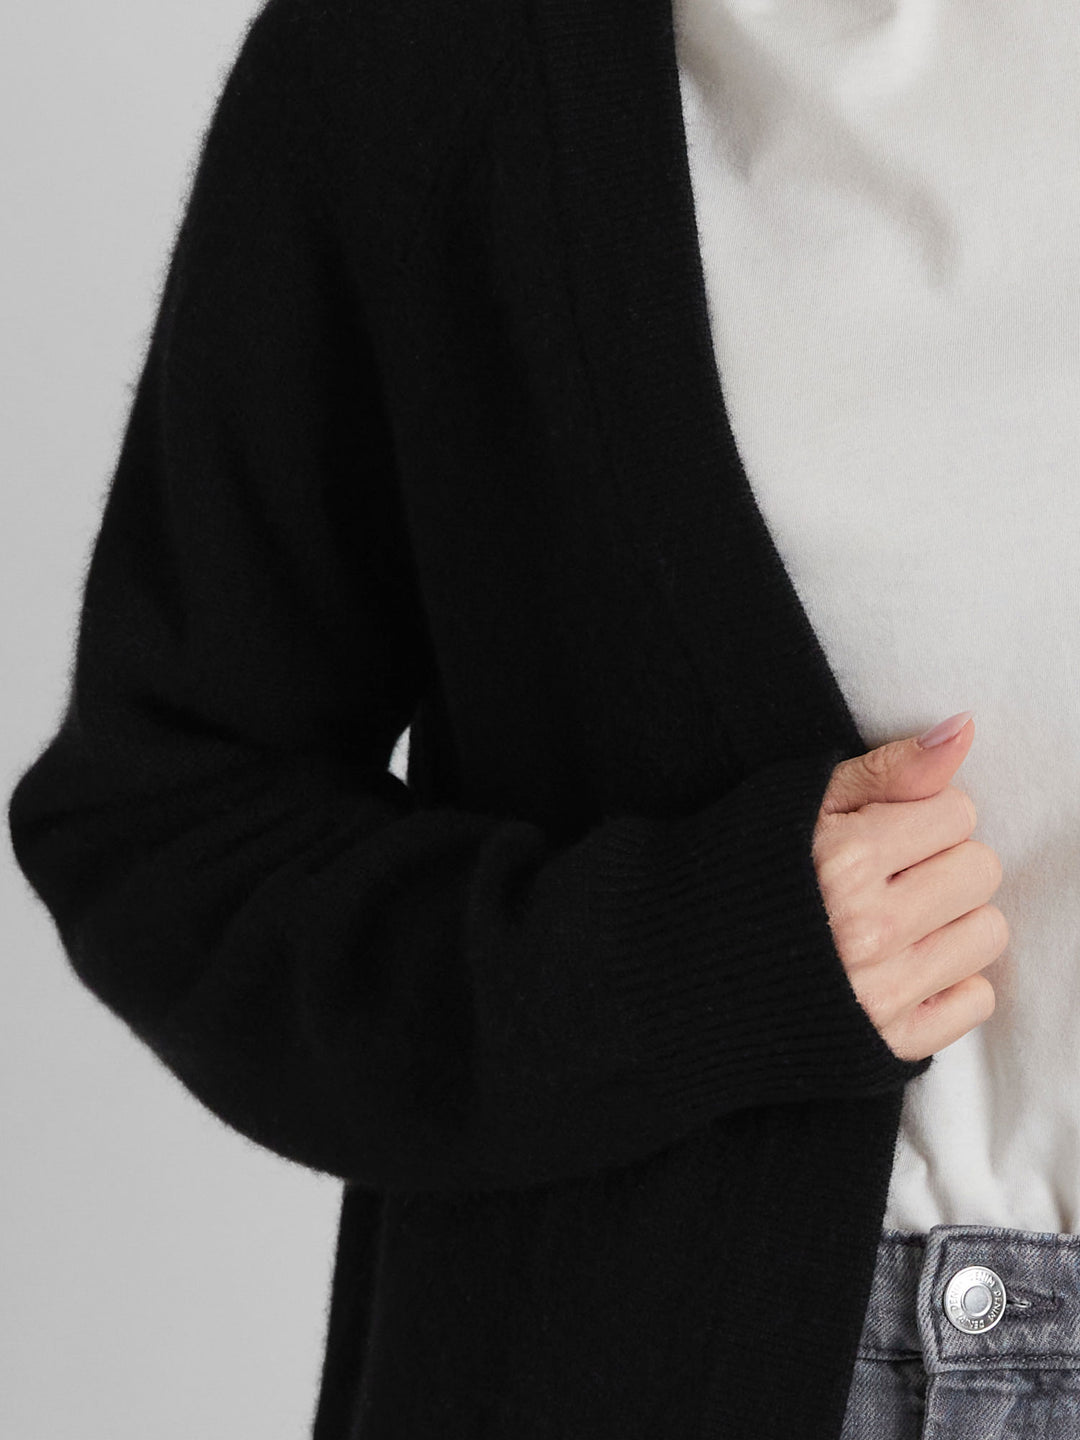 Cashmere cardigan "Solveig" in 100% pure cashmere. Scandinavian design by Kashmina. Color: Black.